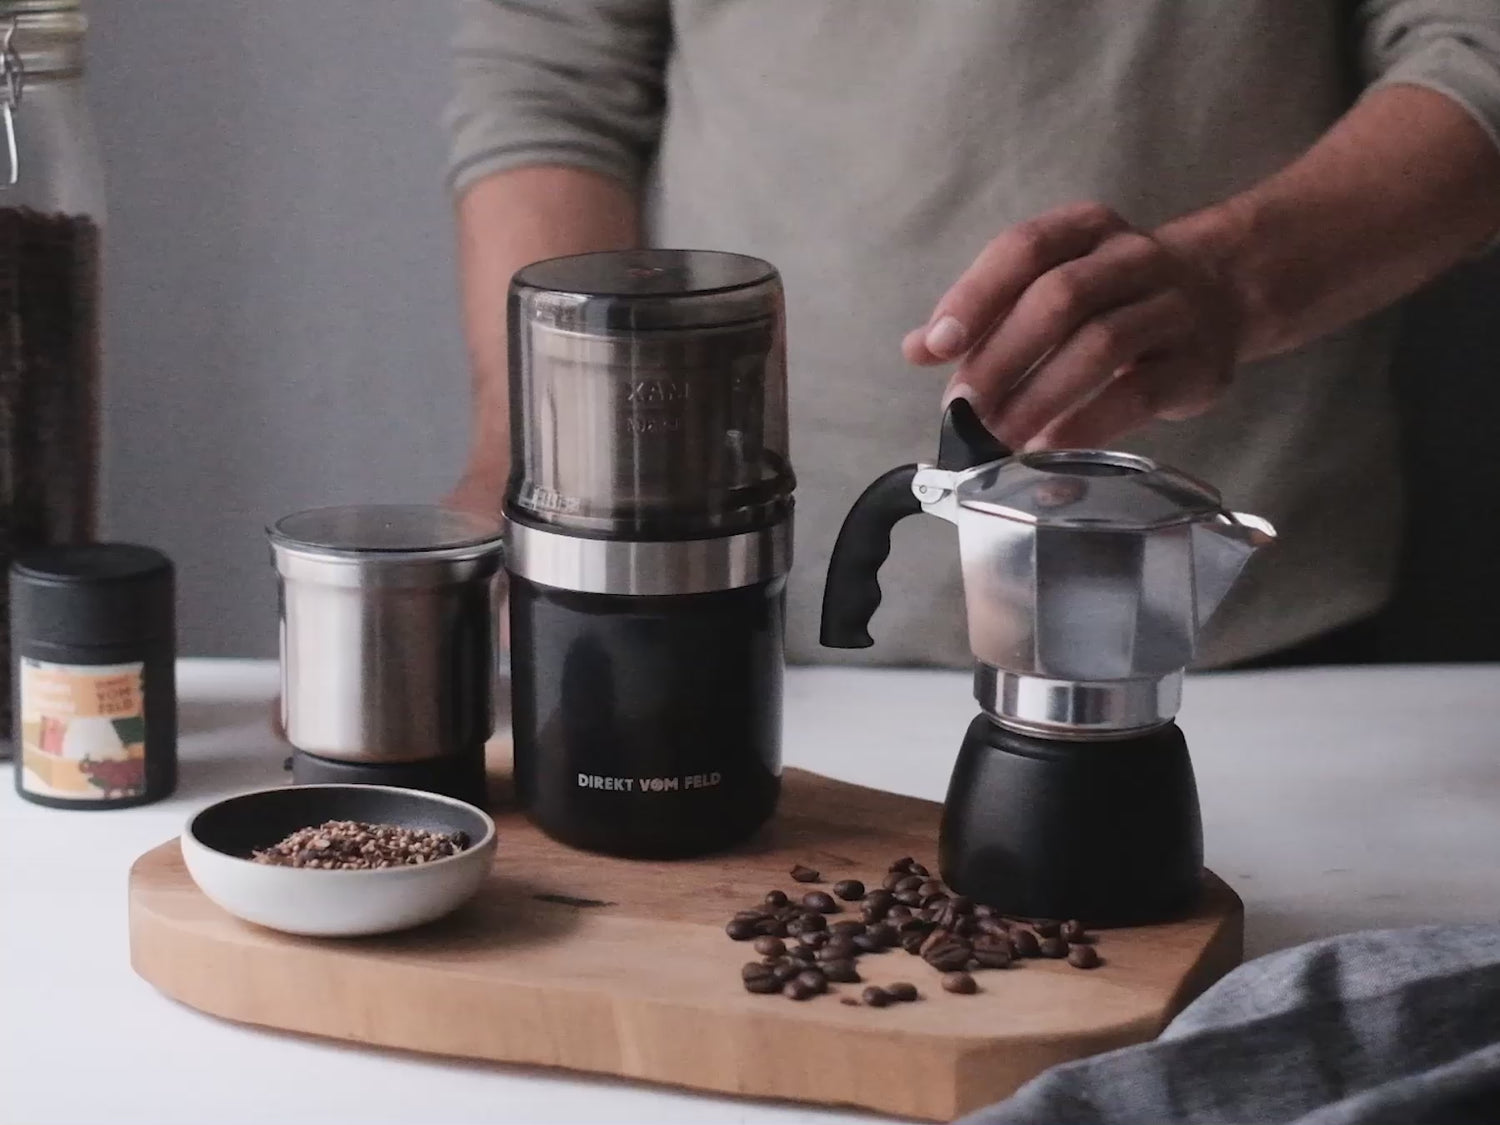 Anleitungsvideo der elektrischen Kaffee- & Gewürzmühle bei Zerkleinern von Gewürzen und Kaffee